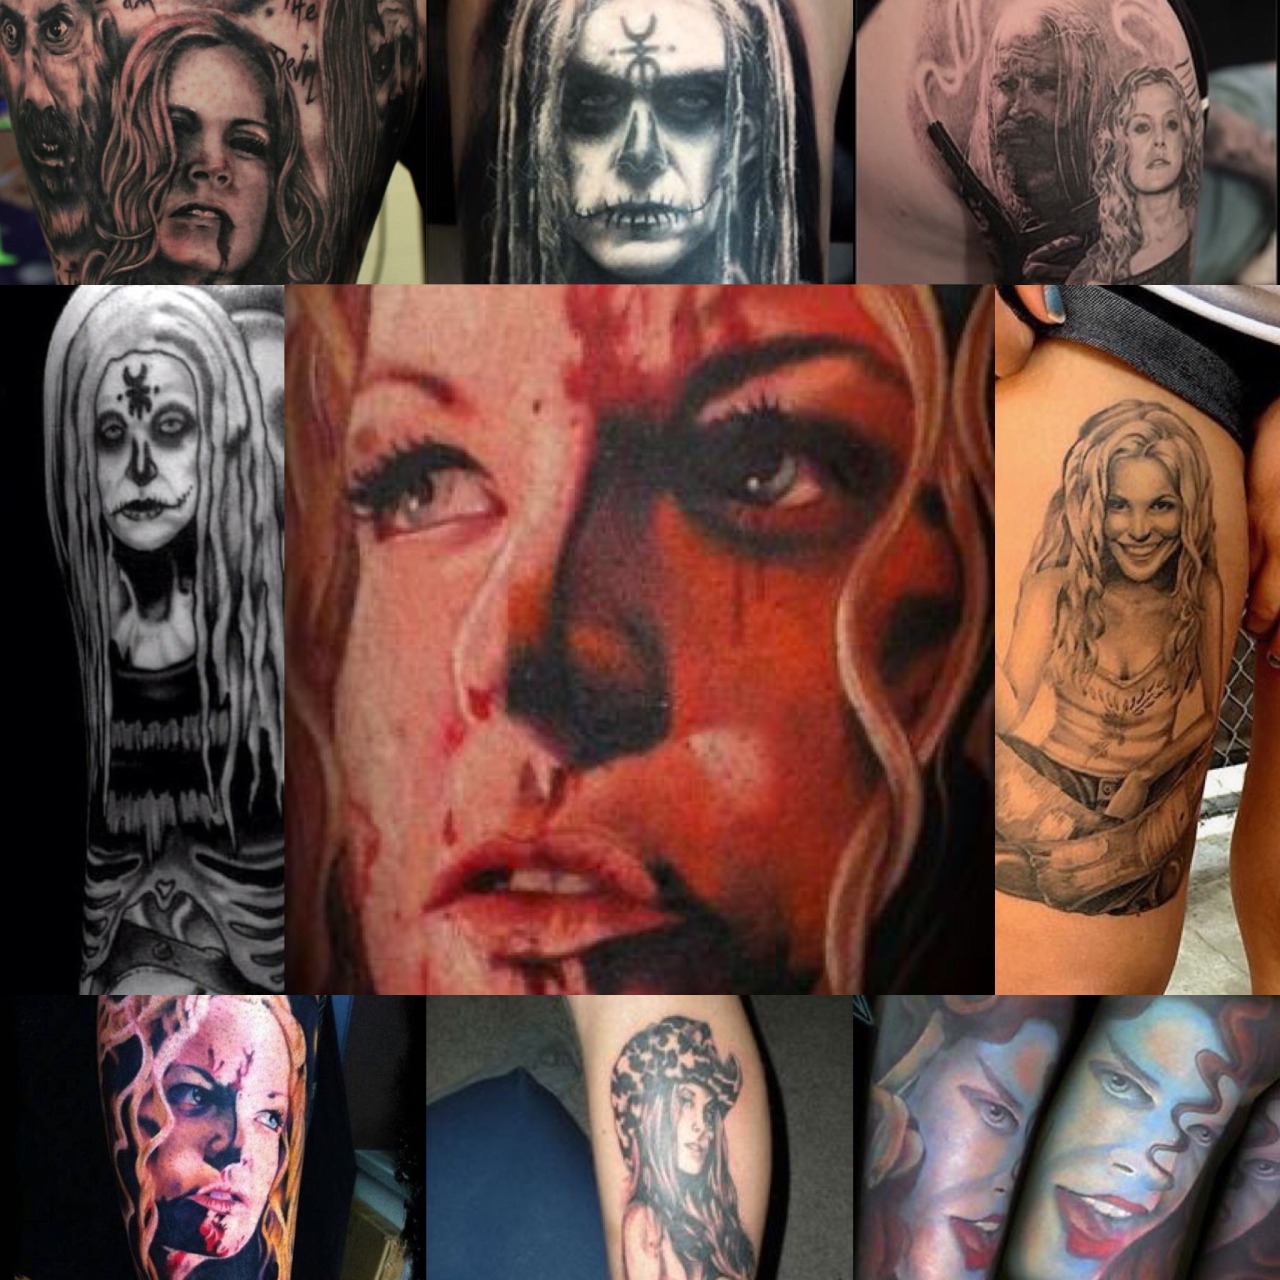 Rob Zombie tatuaje Imágenes por Sloane15  Imágenes españoles imágenes